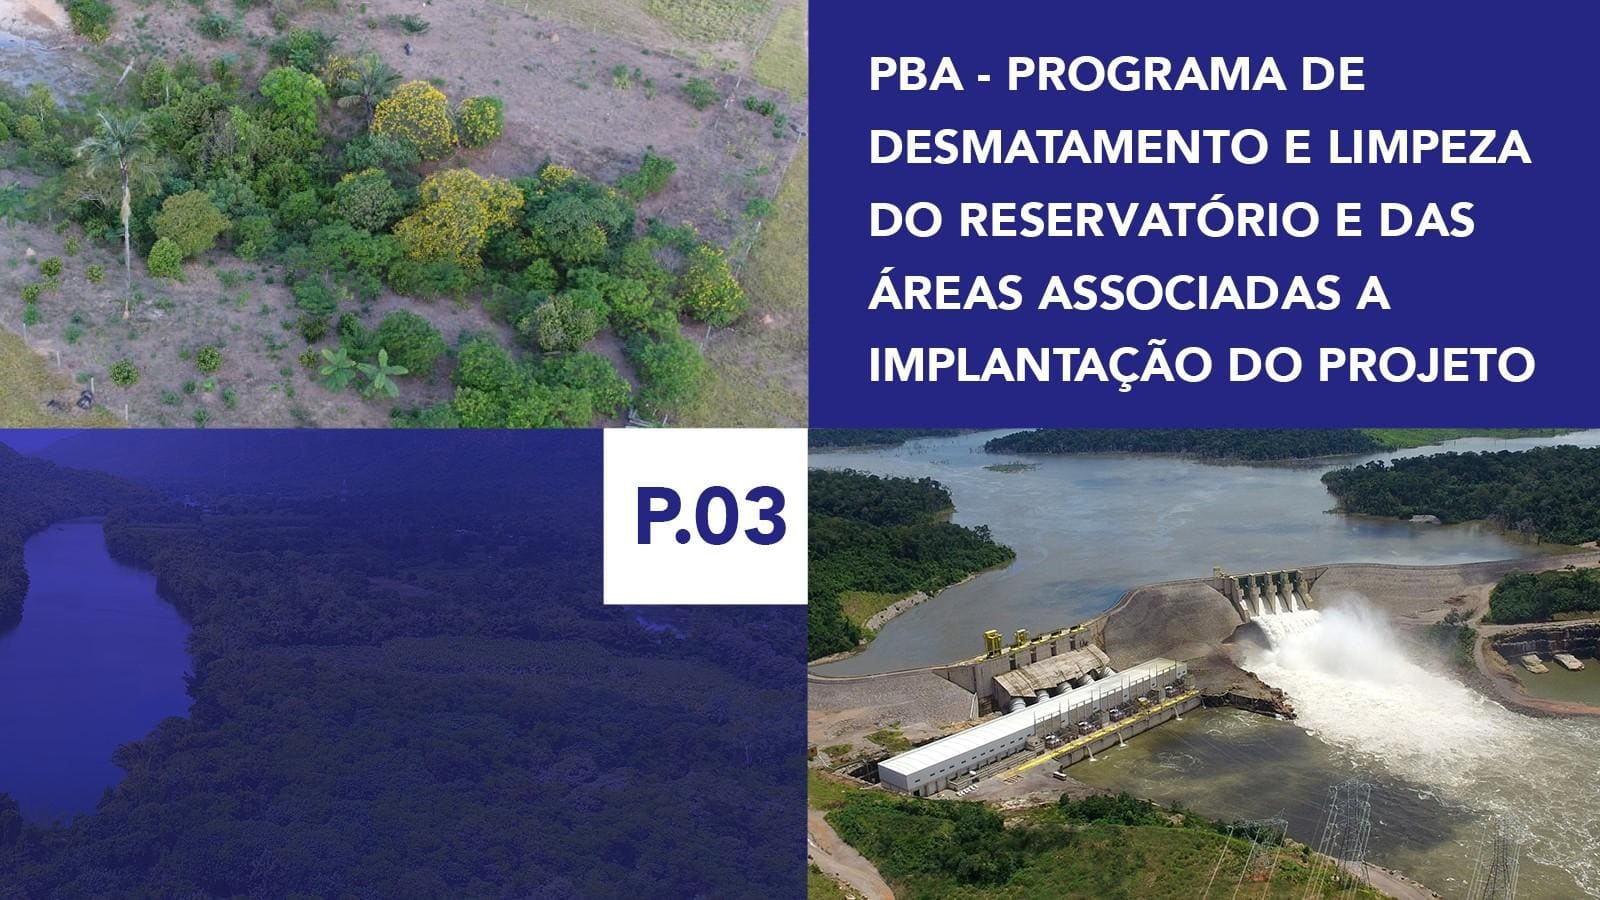 P.03 - Programa de Desmatamento e Limpeza do Reservatório e das Áreas Associadas a Implantação do Projeto